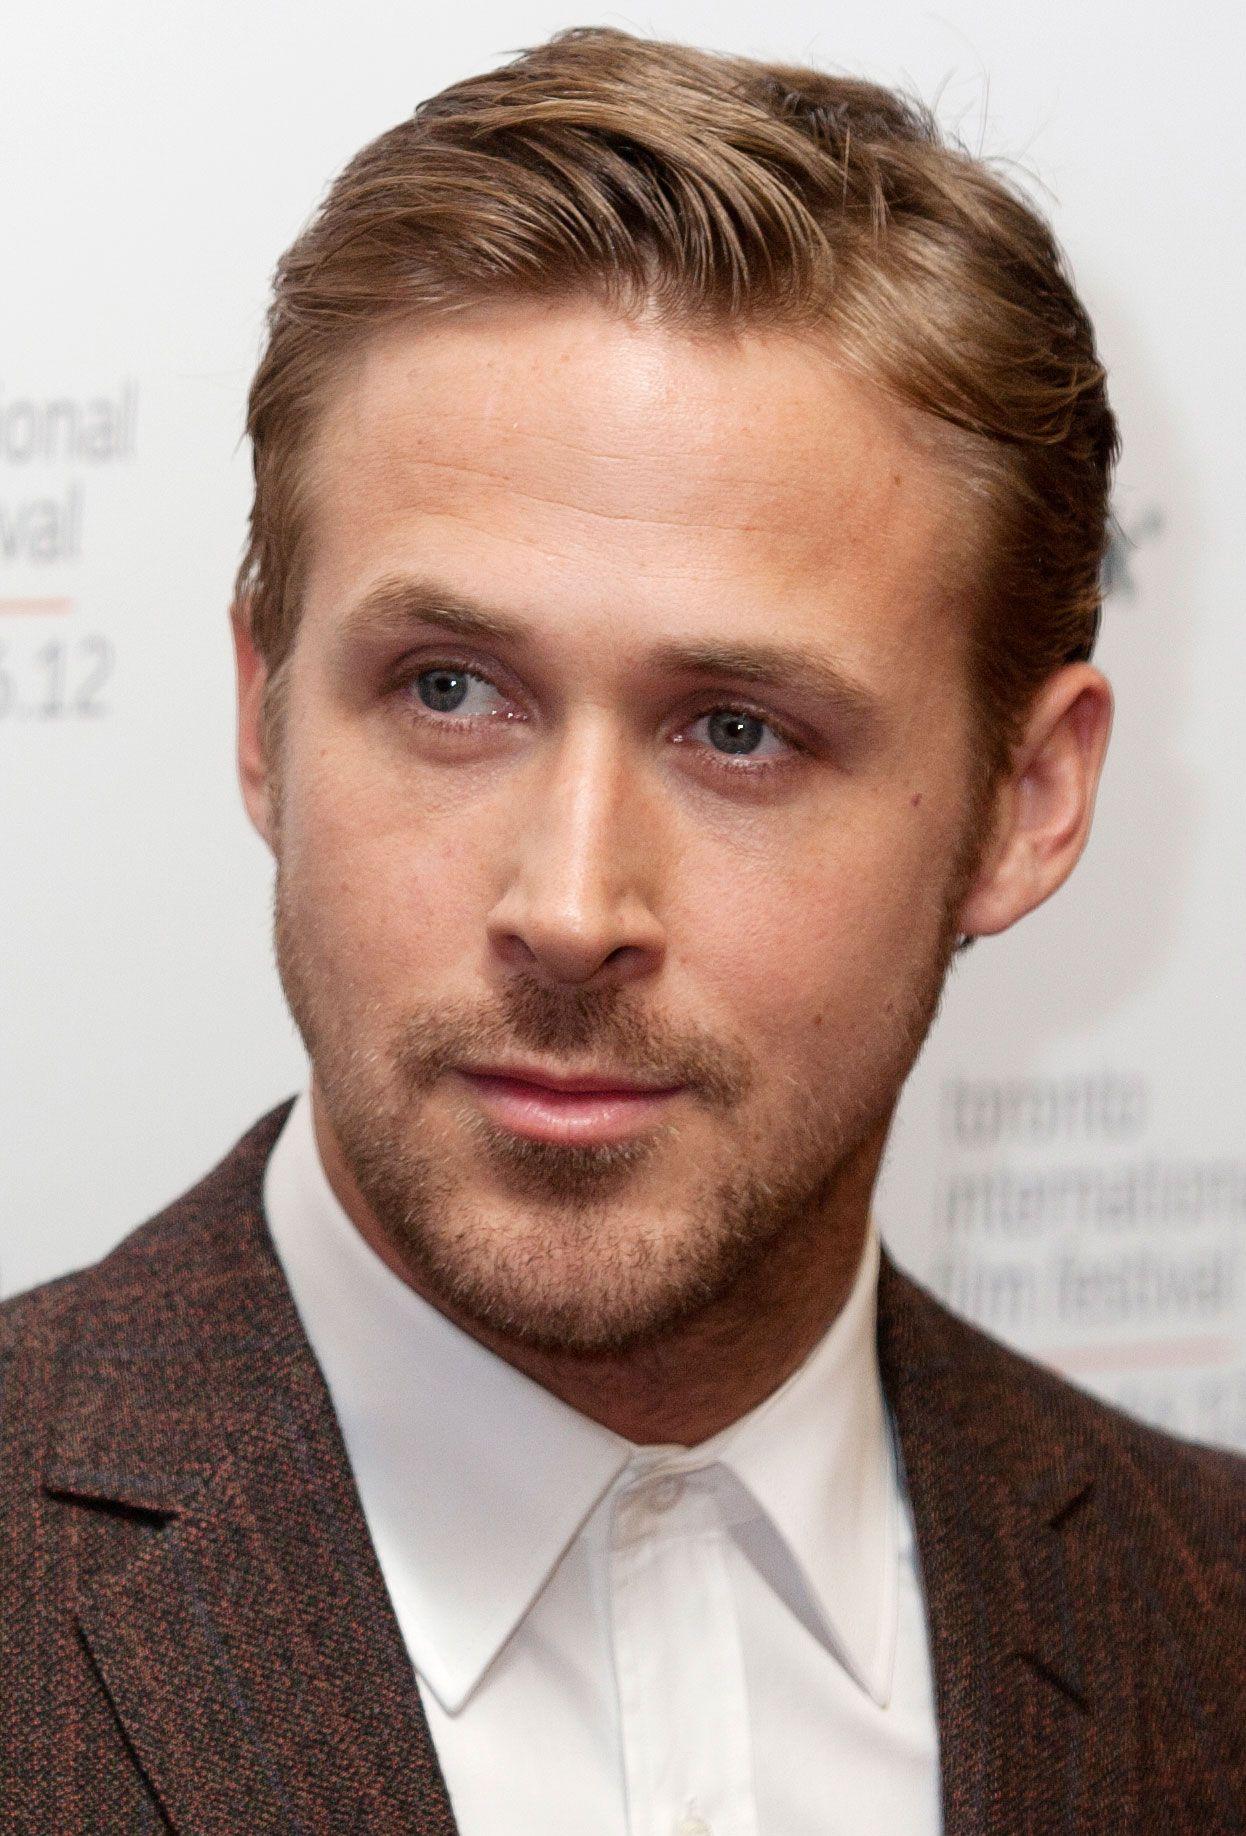 Awesome Ryan Gosling Photo. Ryan Gosling Wallpaper